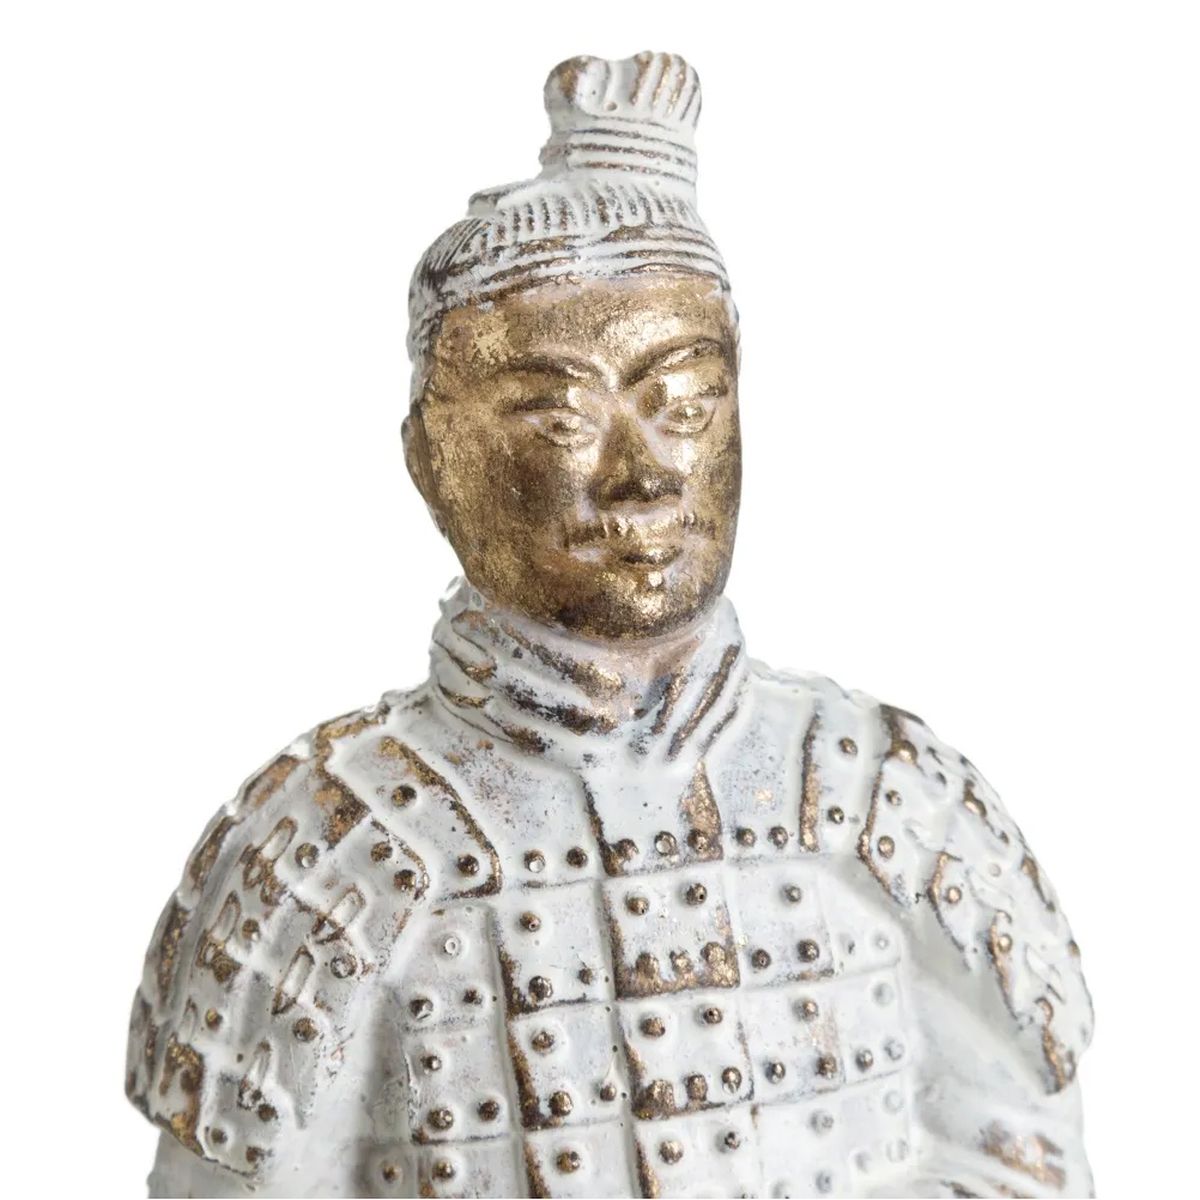 Statuette Soldat de l'Empereur Qin 17 cm